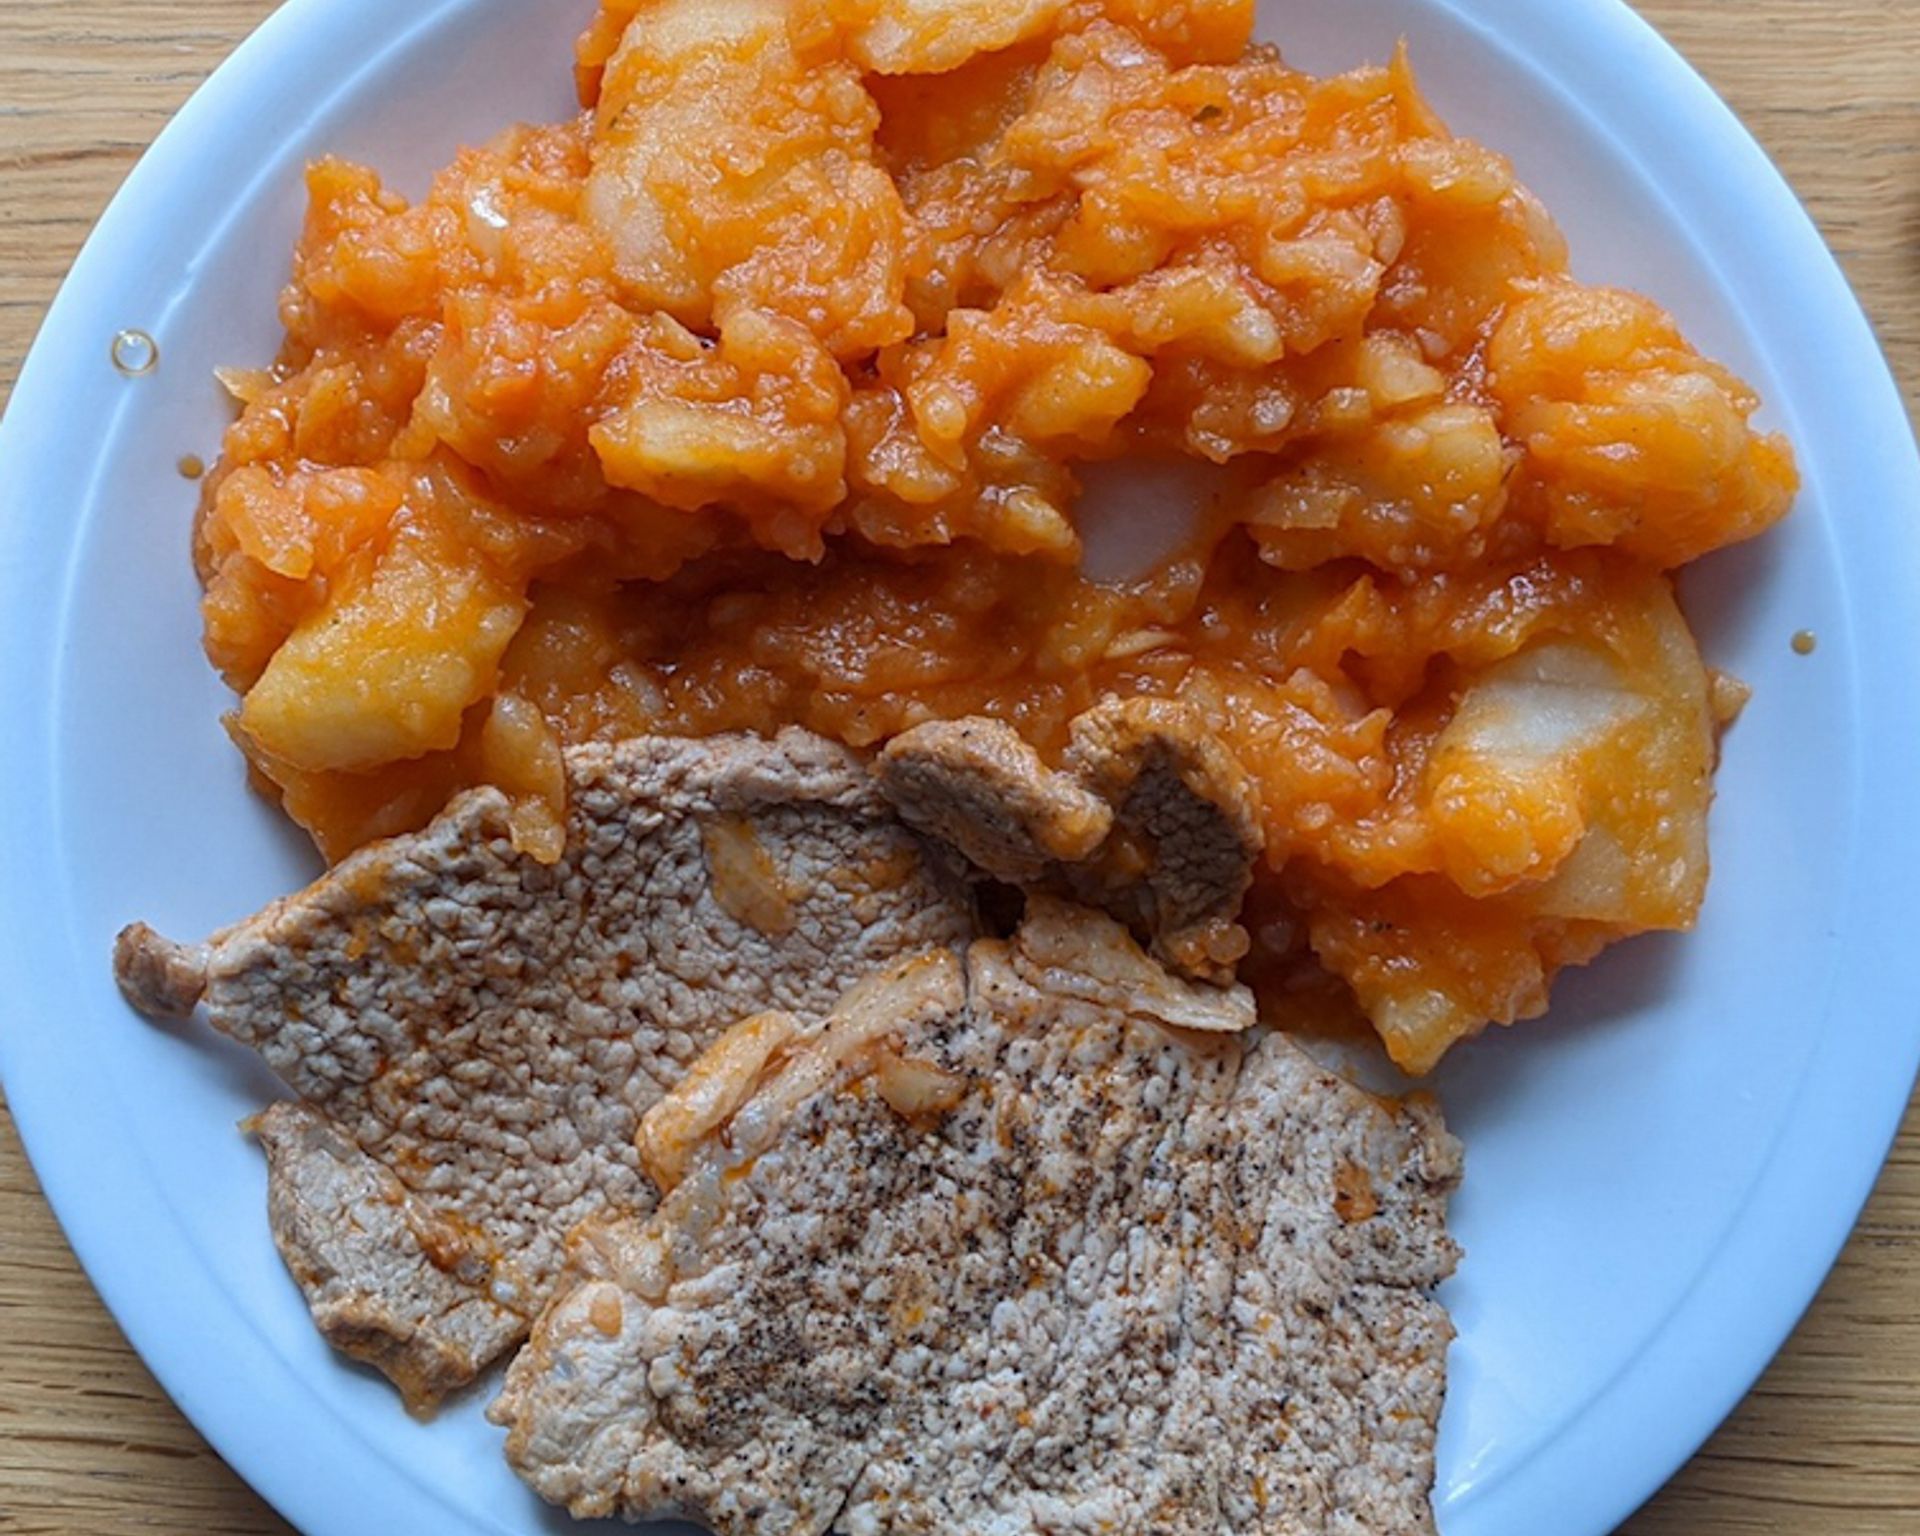 Mäso a zemiaky s paprikou na tanieri - recept na belehradské rezne